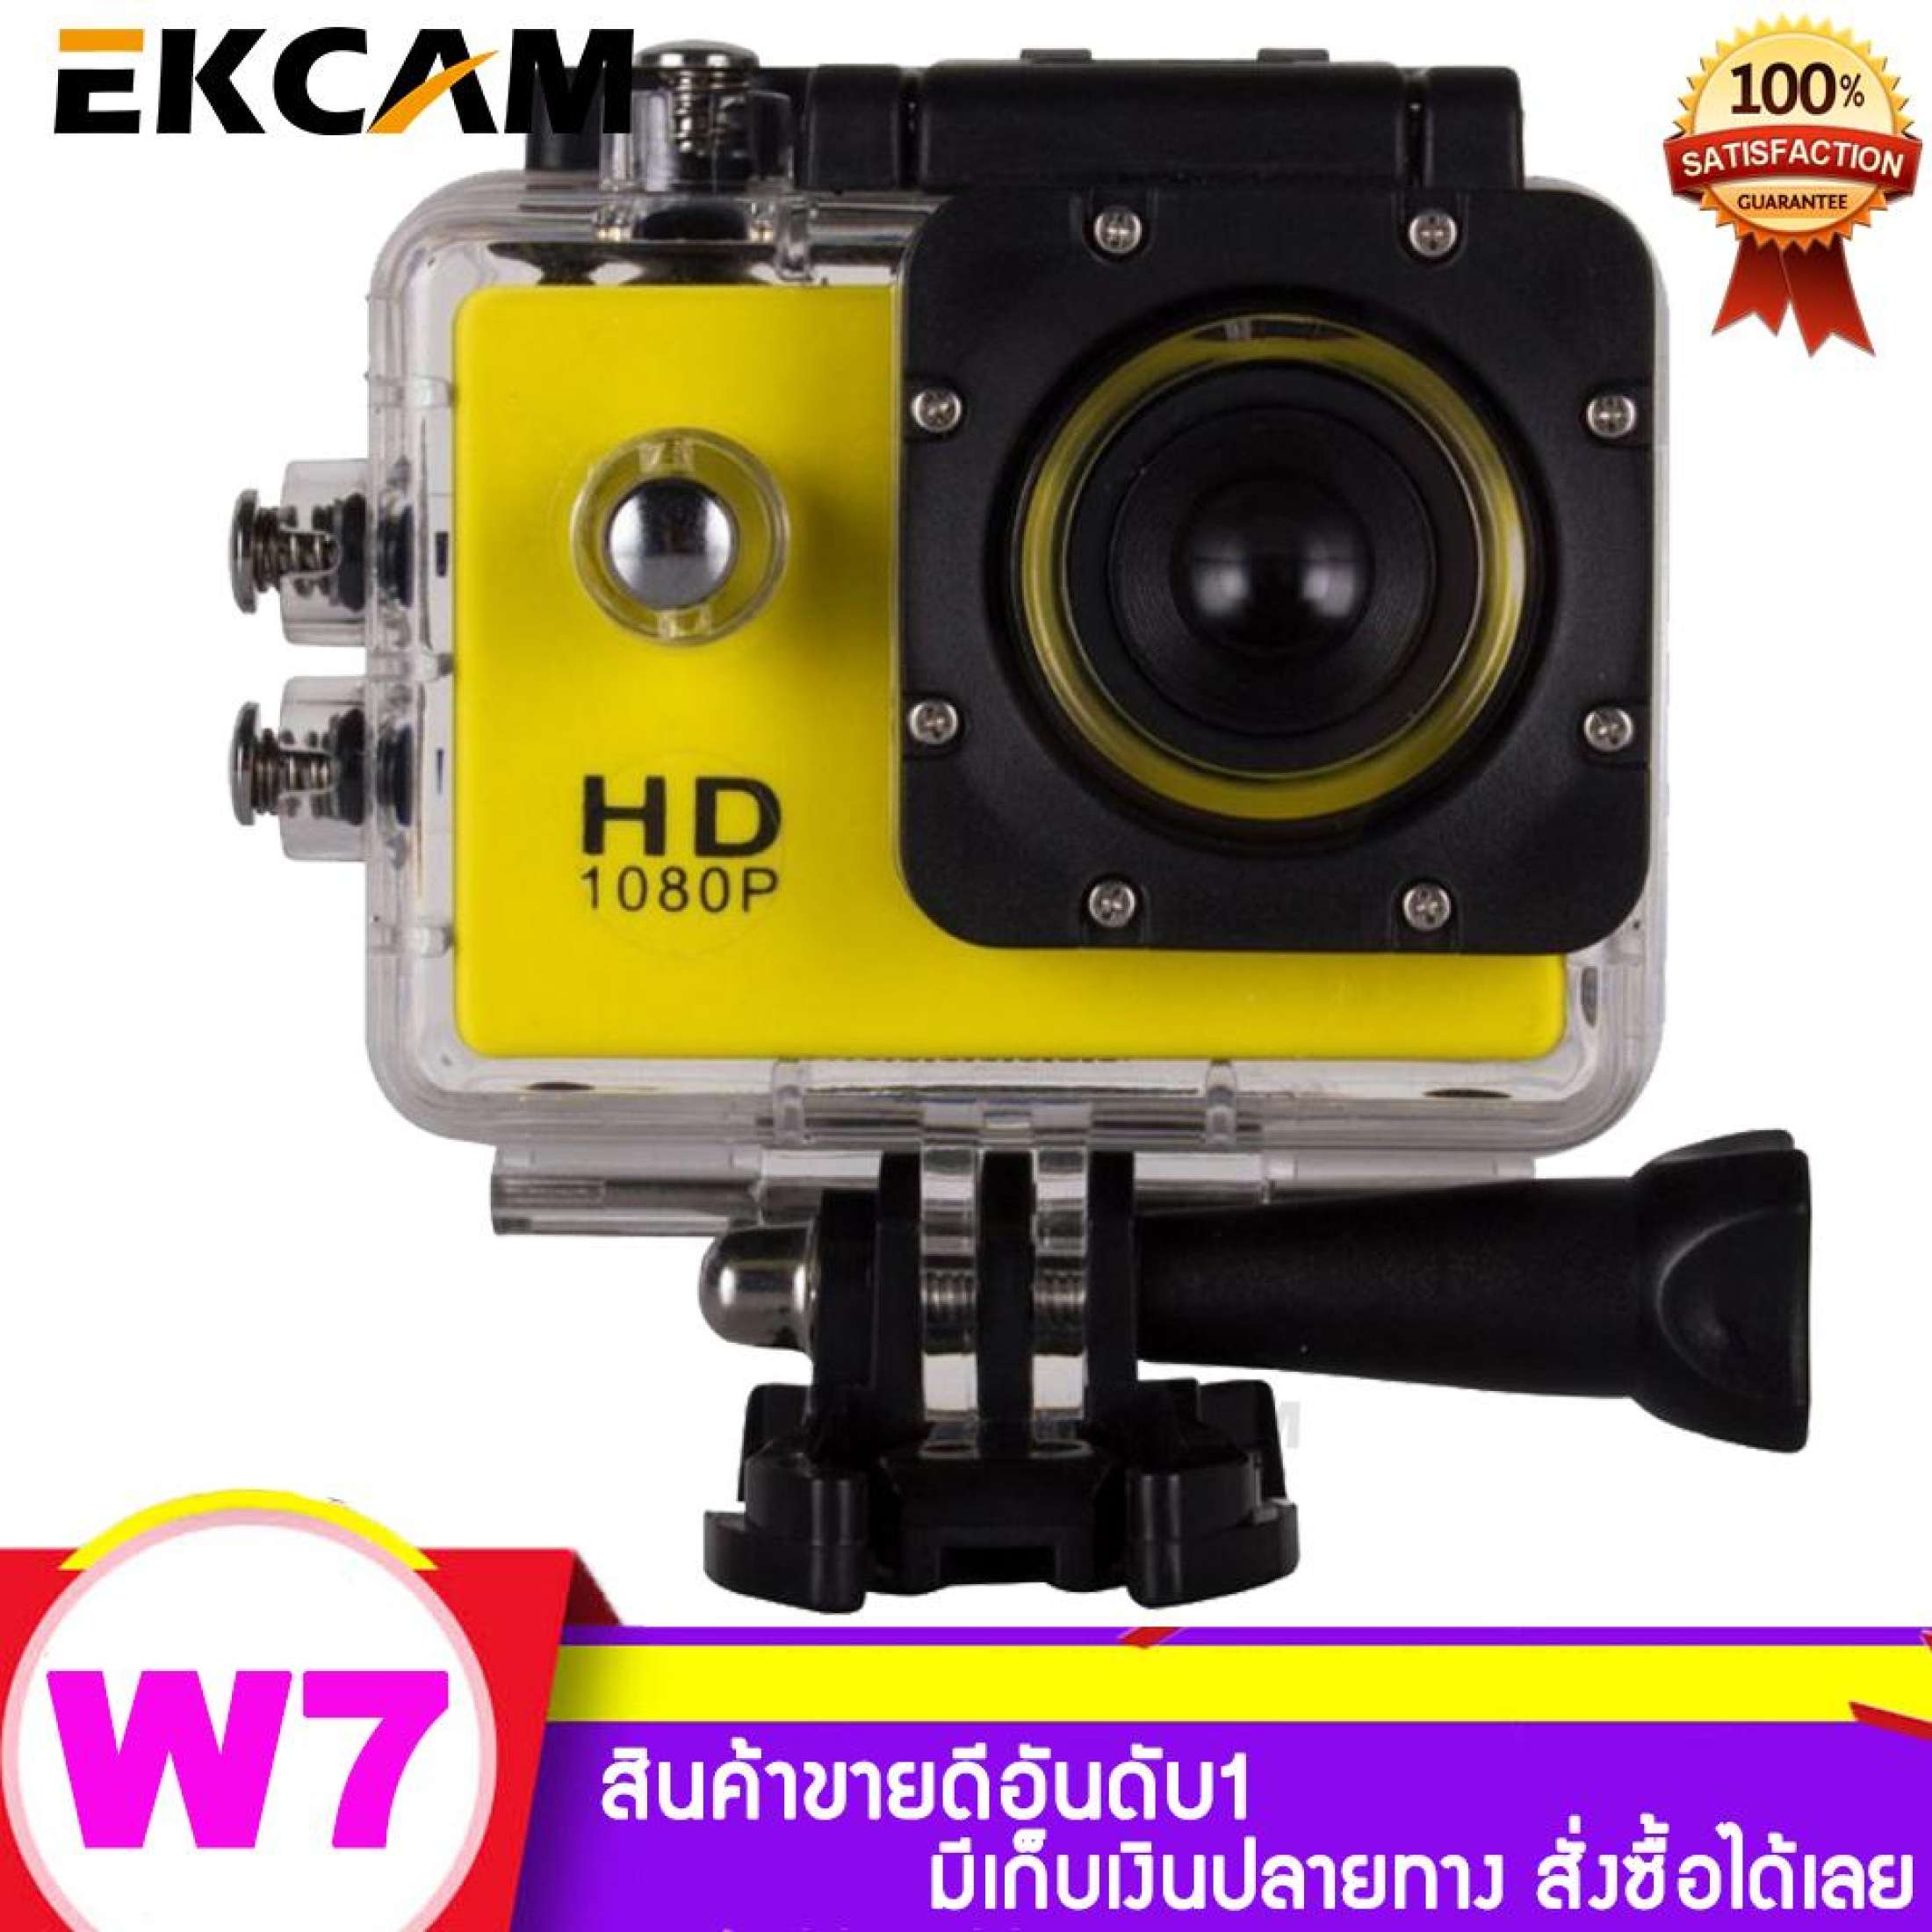 กล้องกันน้ำ W7 Sport Camera/ Action Camera 1080P จอ 2 นิ้ว (พร้อมอุปกรณ์)